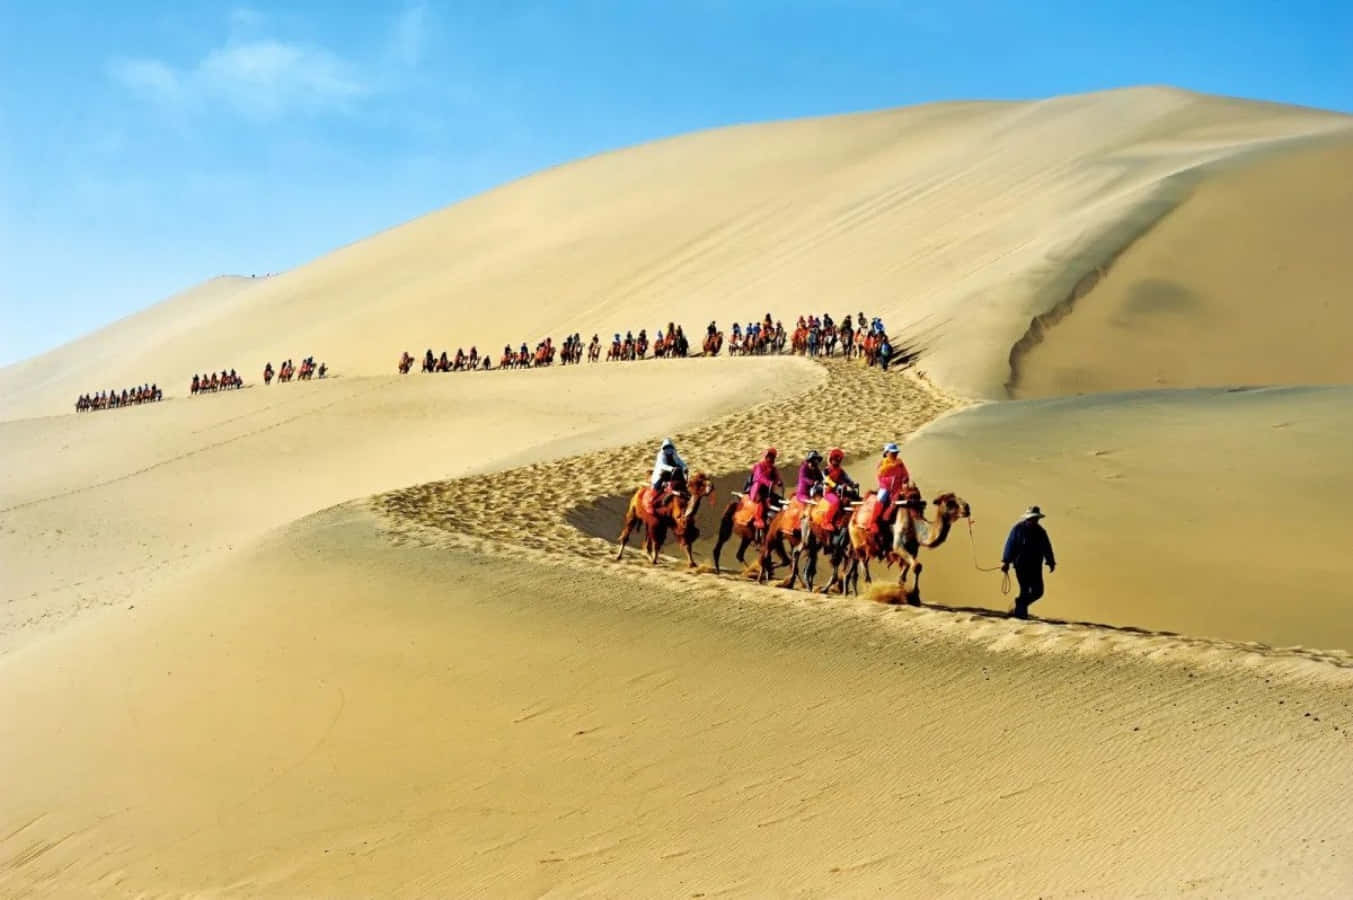 En gruppe mennesker der rider kameler på en ørken sanddune.